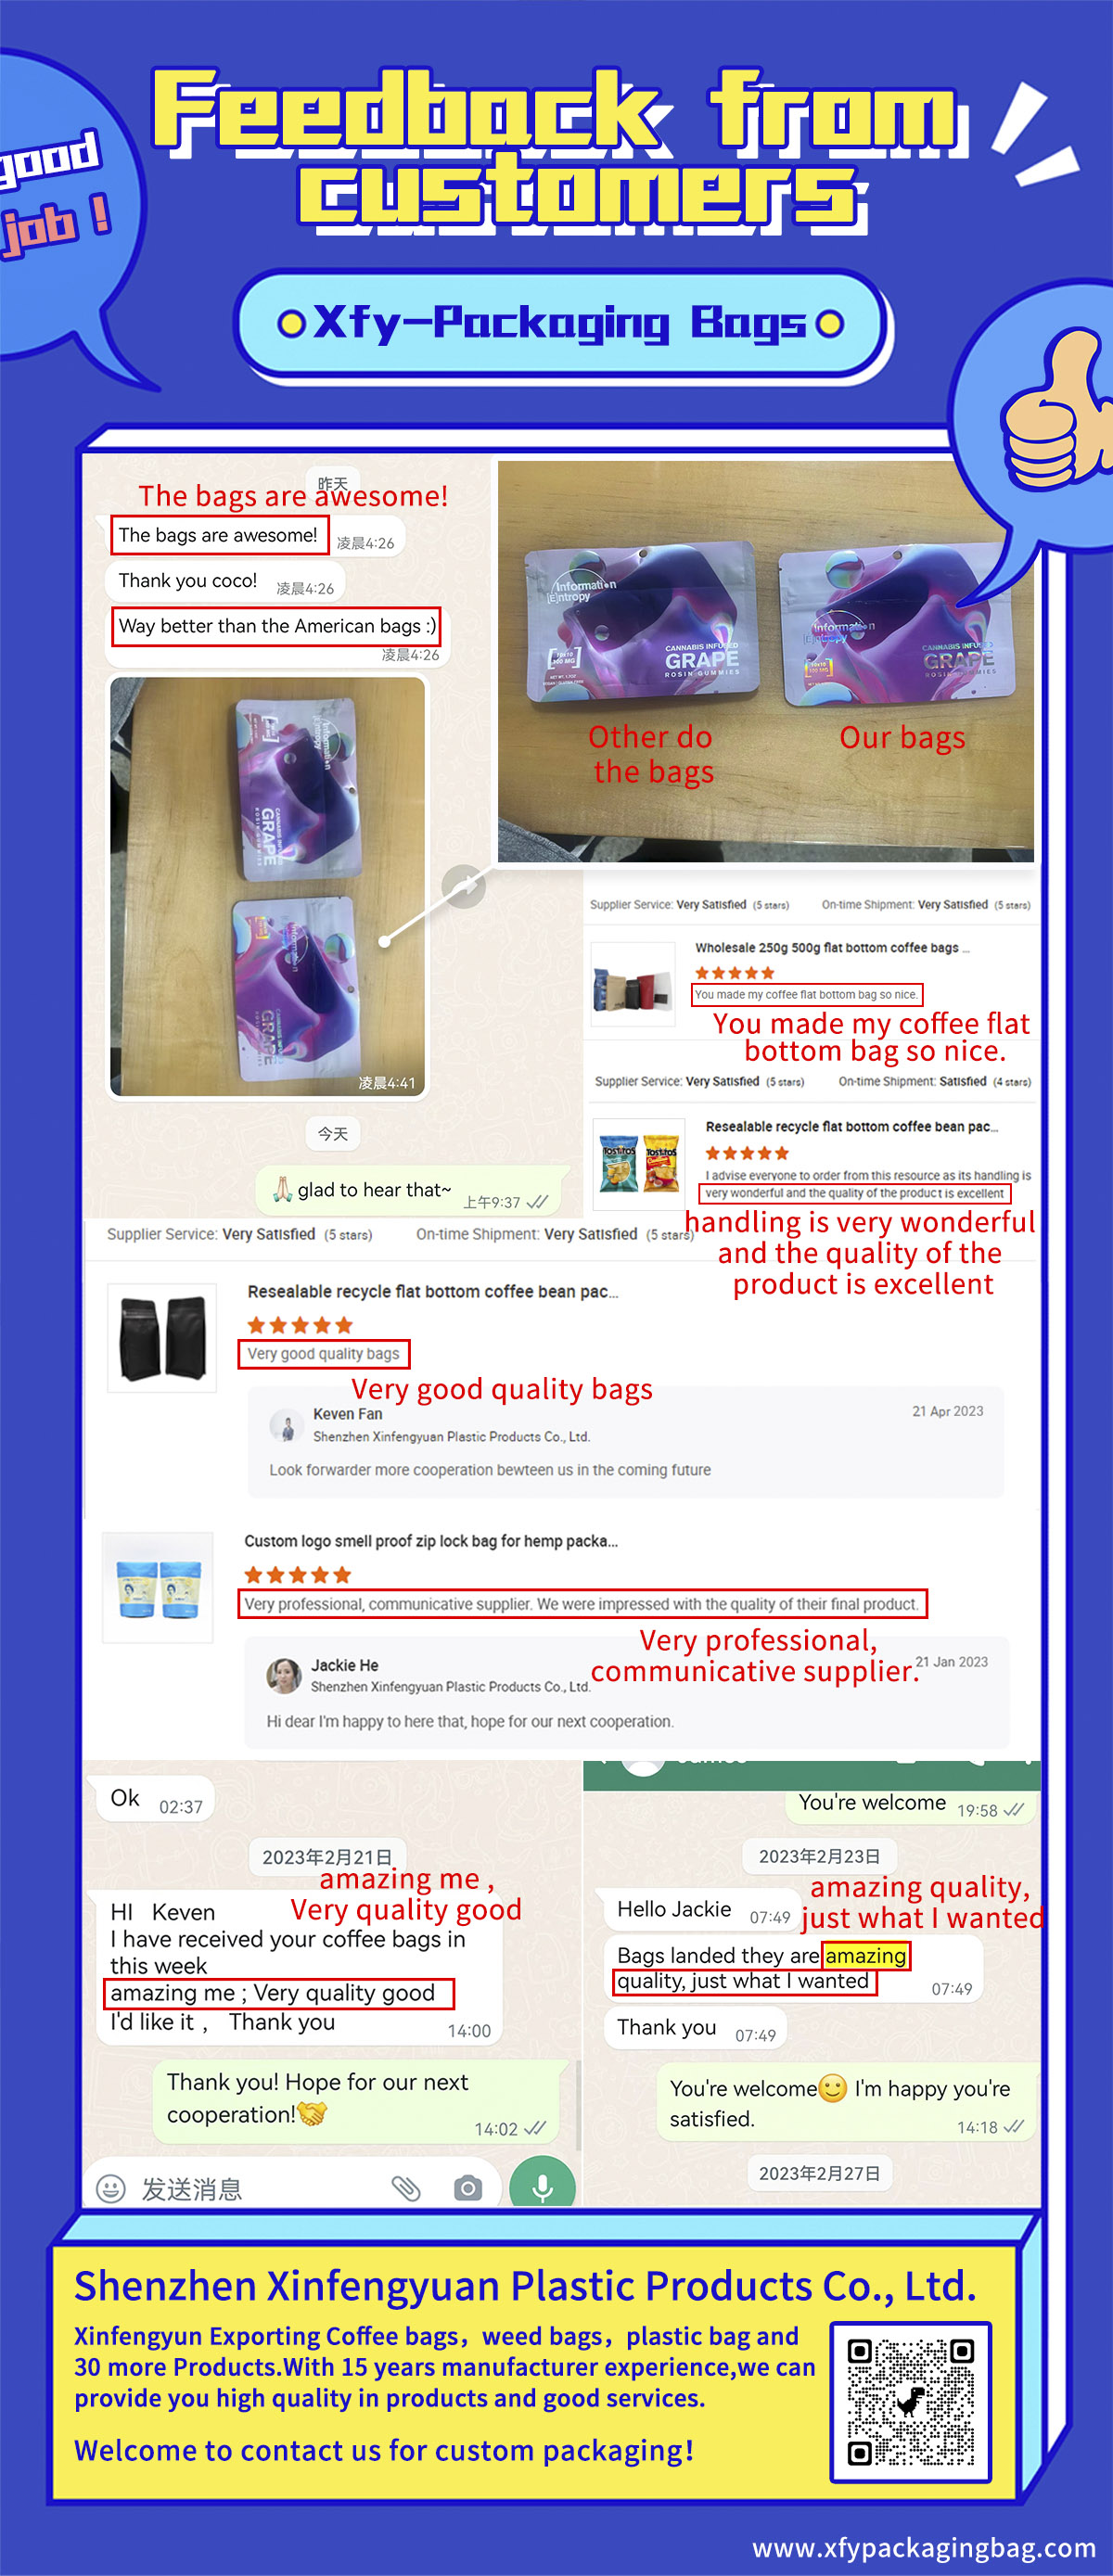 xfy-packaging bags-Customer feedback-1.jpg